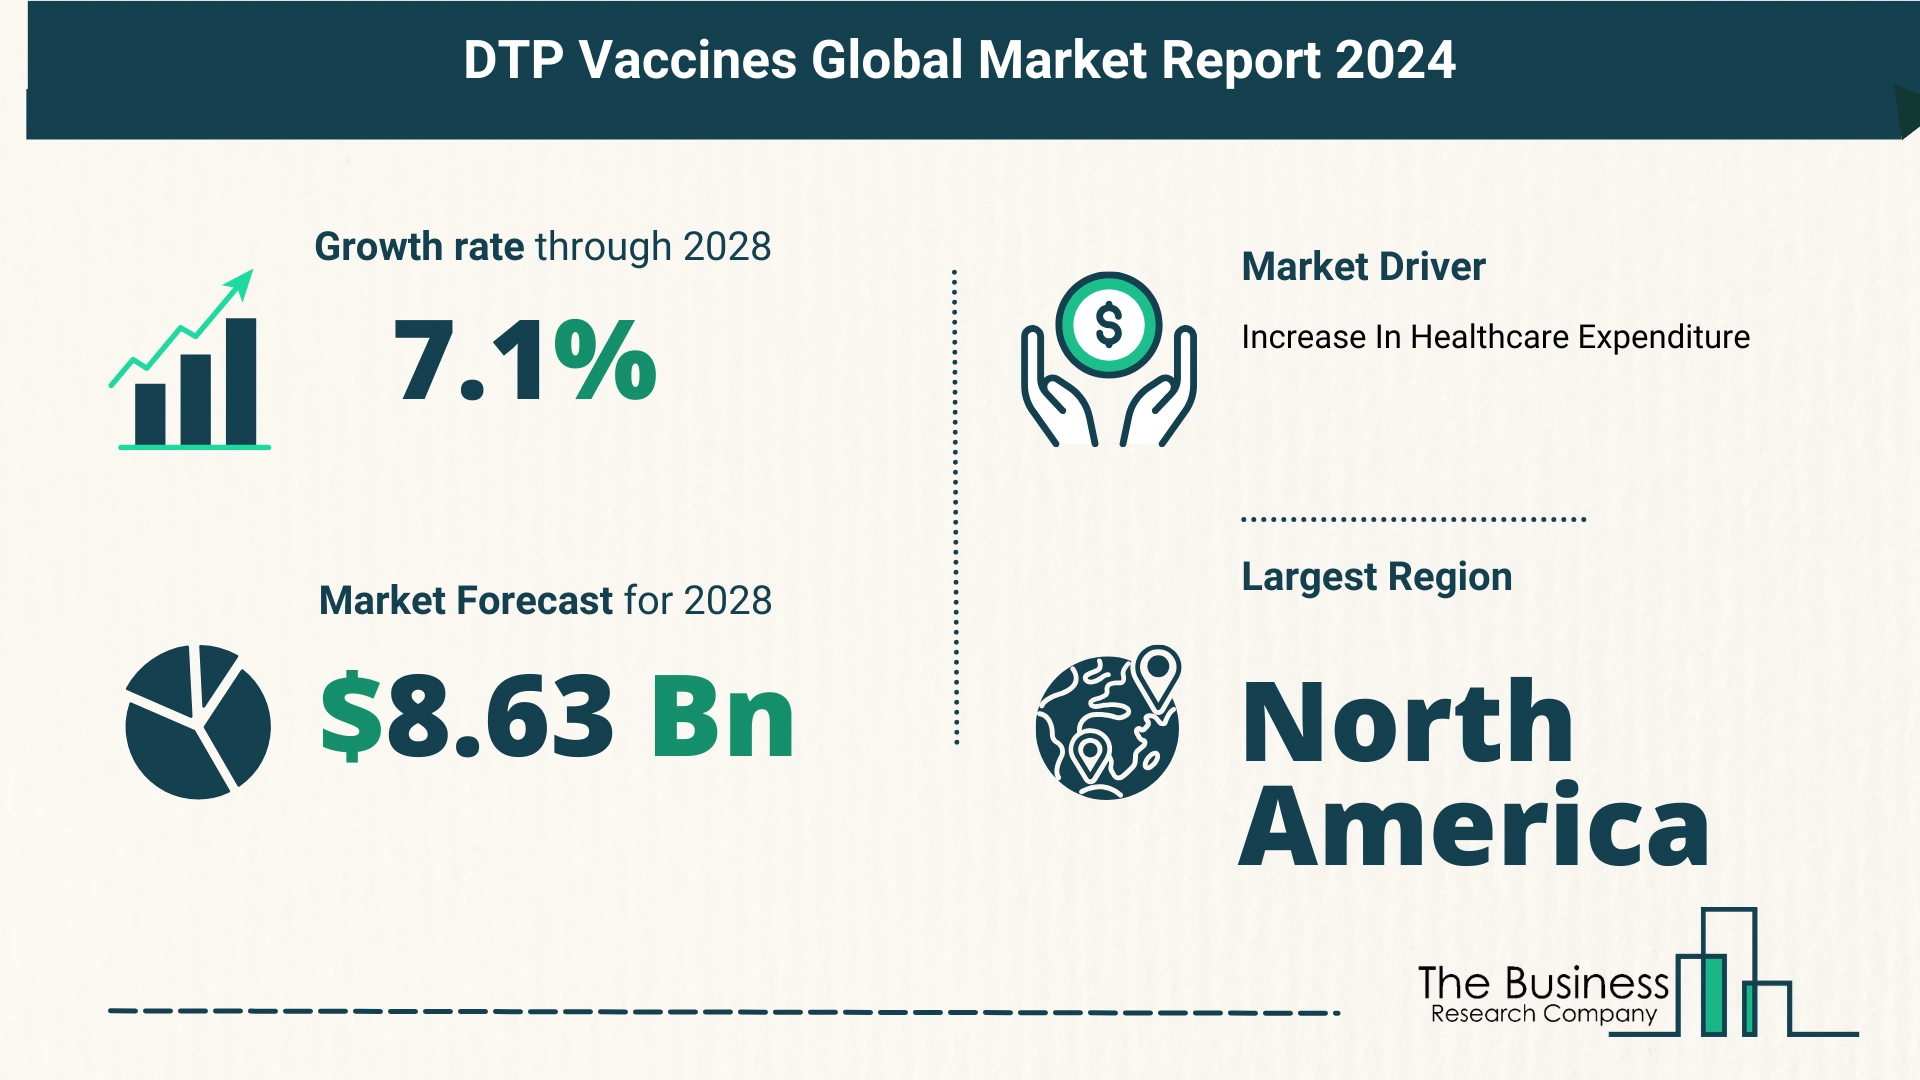 Global DTP Vaccines Market